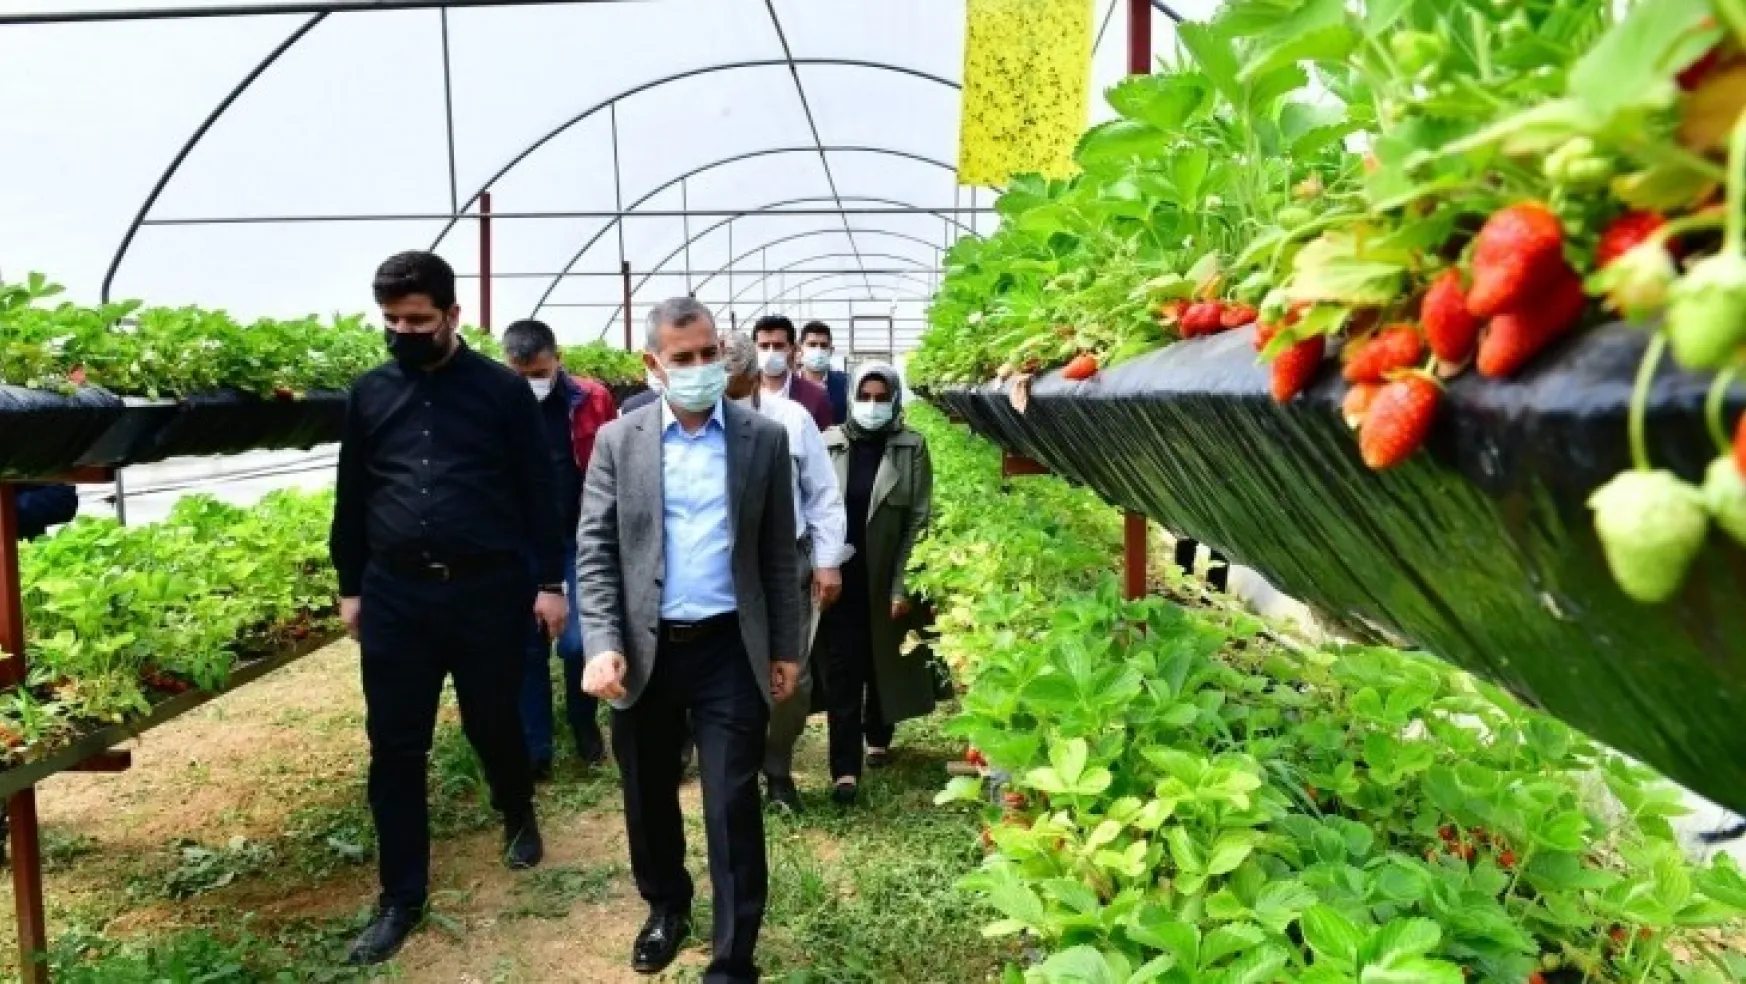 Yeşilyurt Belediyesi Yeşil Gıda Seracılık Alanında Çilek Üretimleri Hız Kazandı